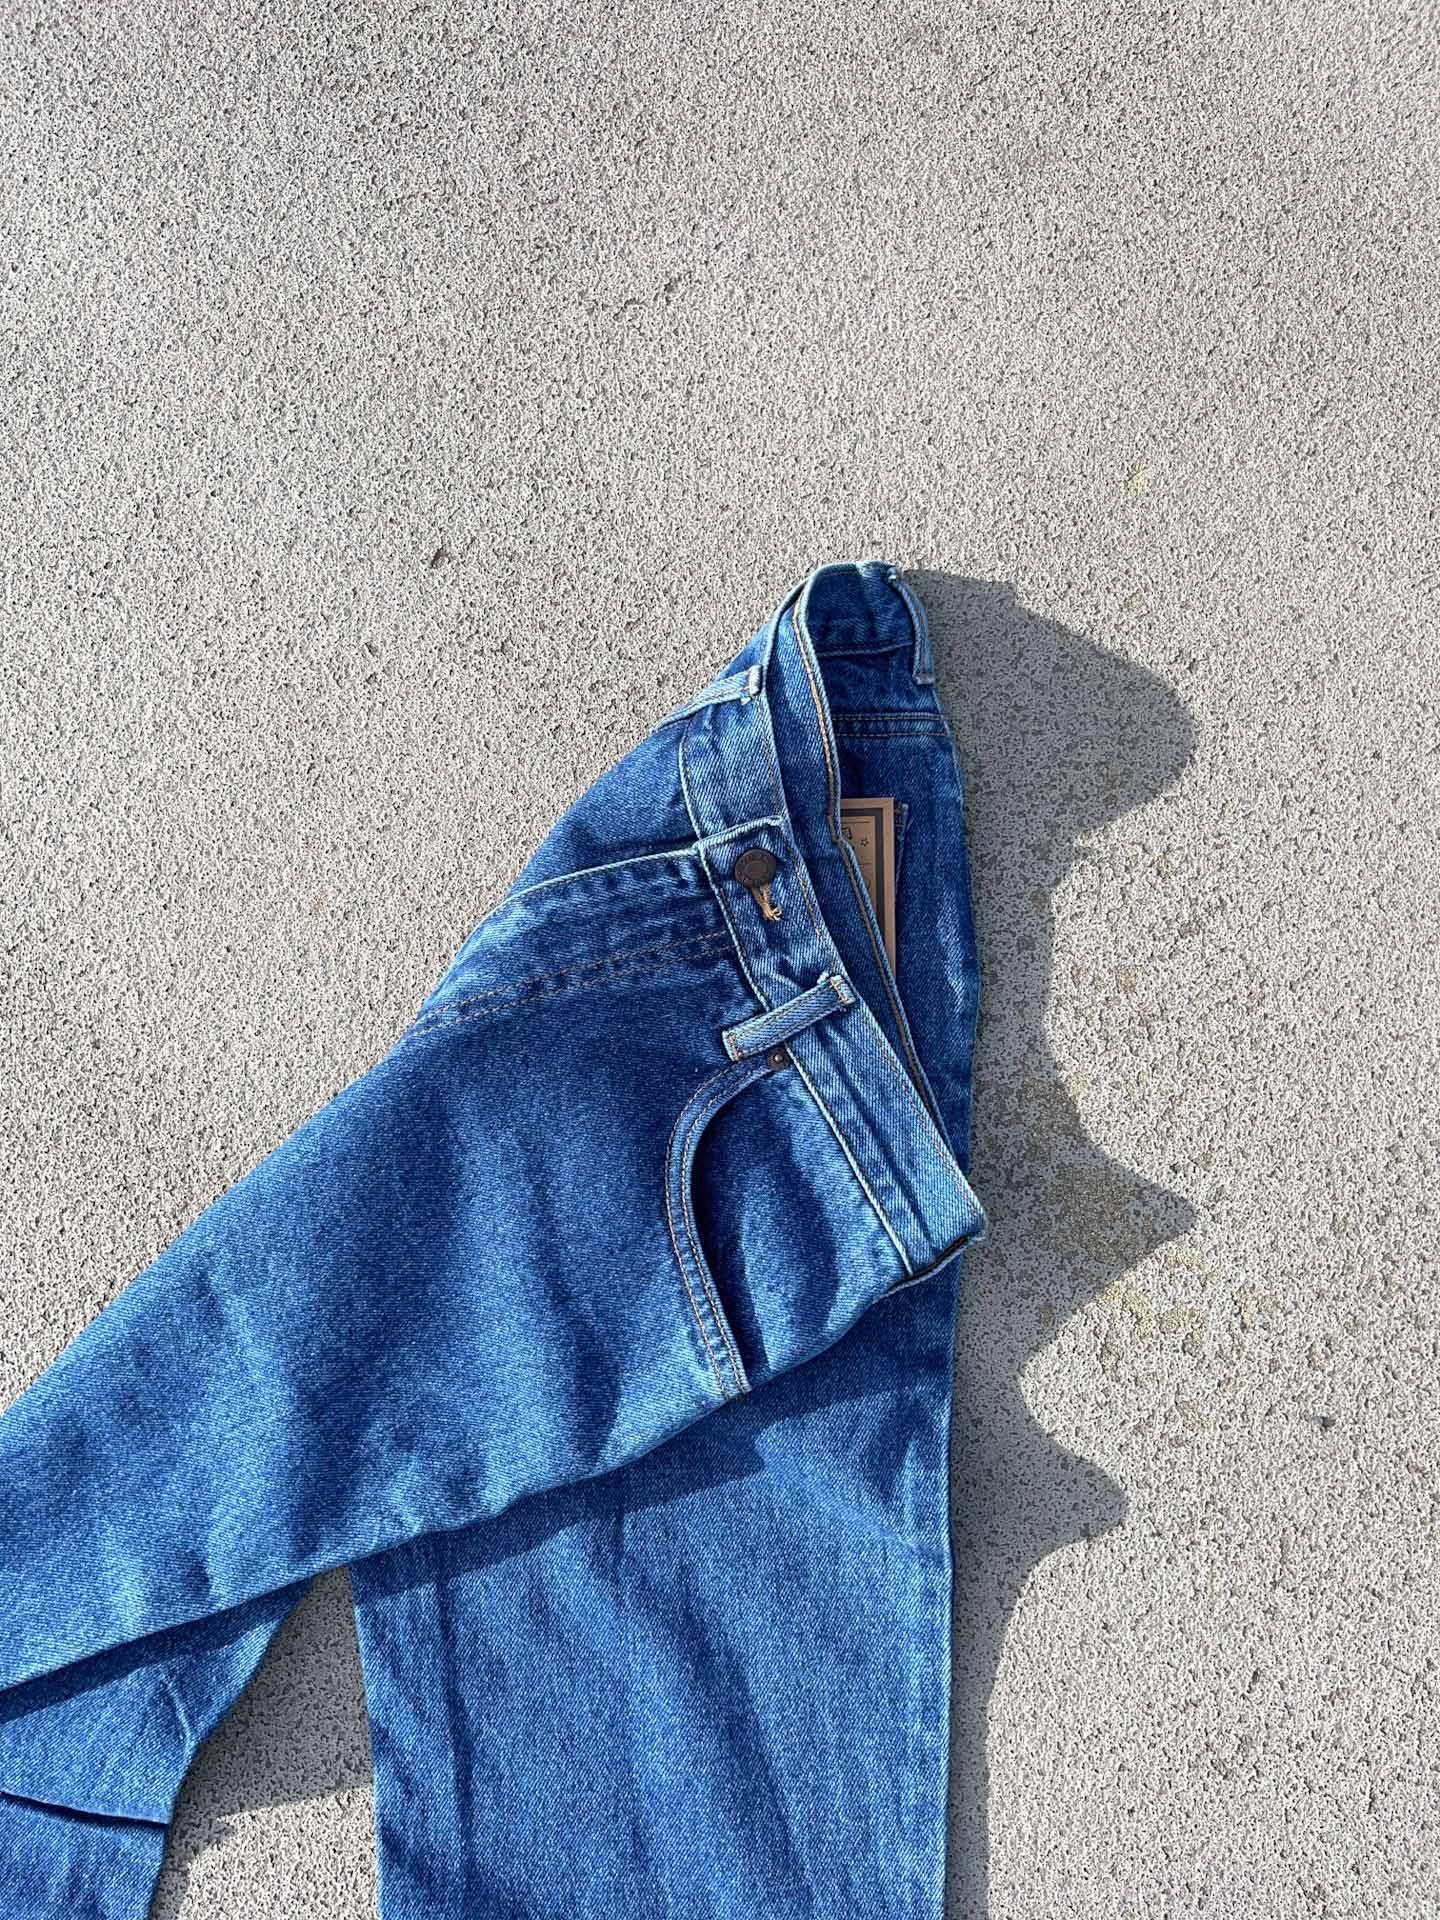 Redwing denim jeans - secondvintage